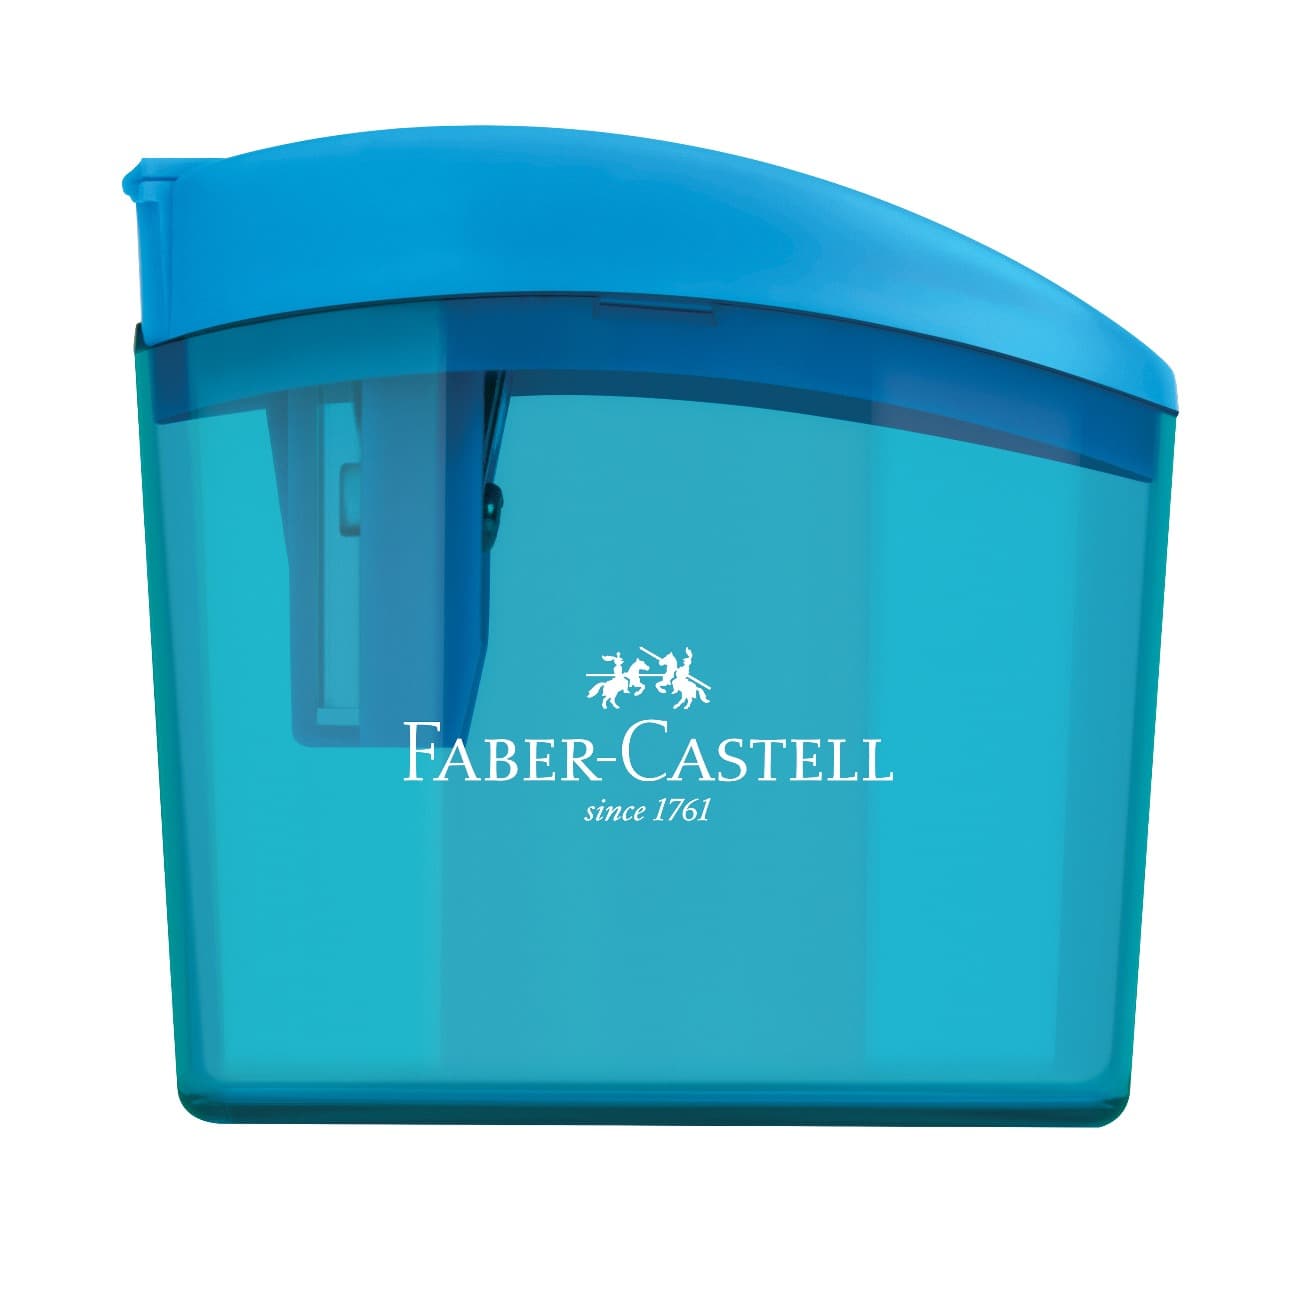 Apontador Faber-Castell Com Depsito Clickbox Cartela